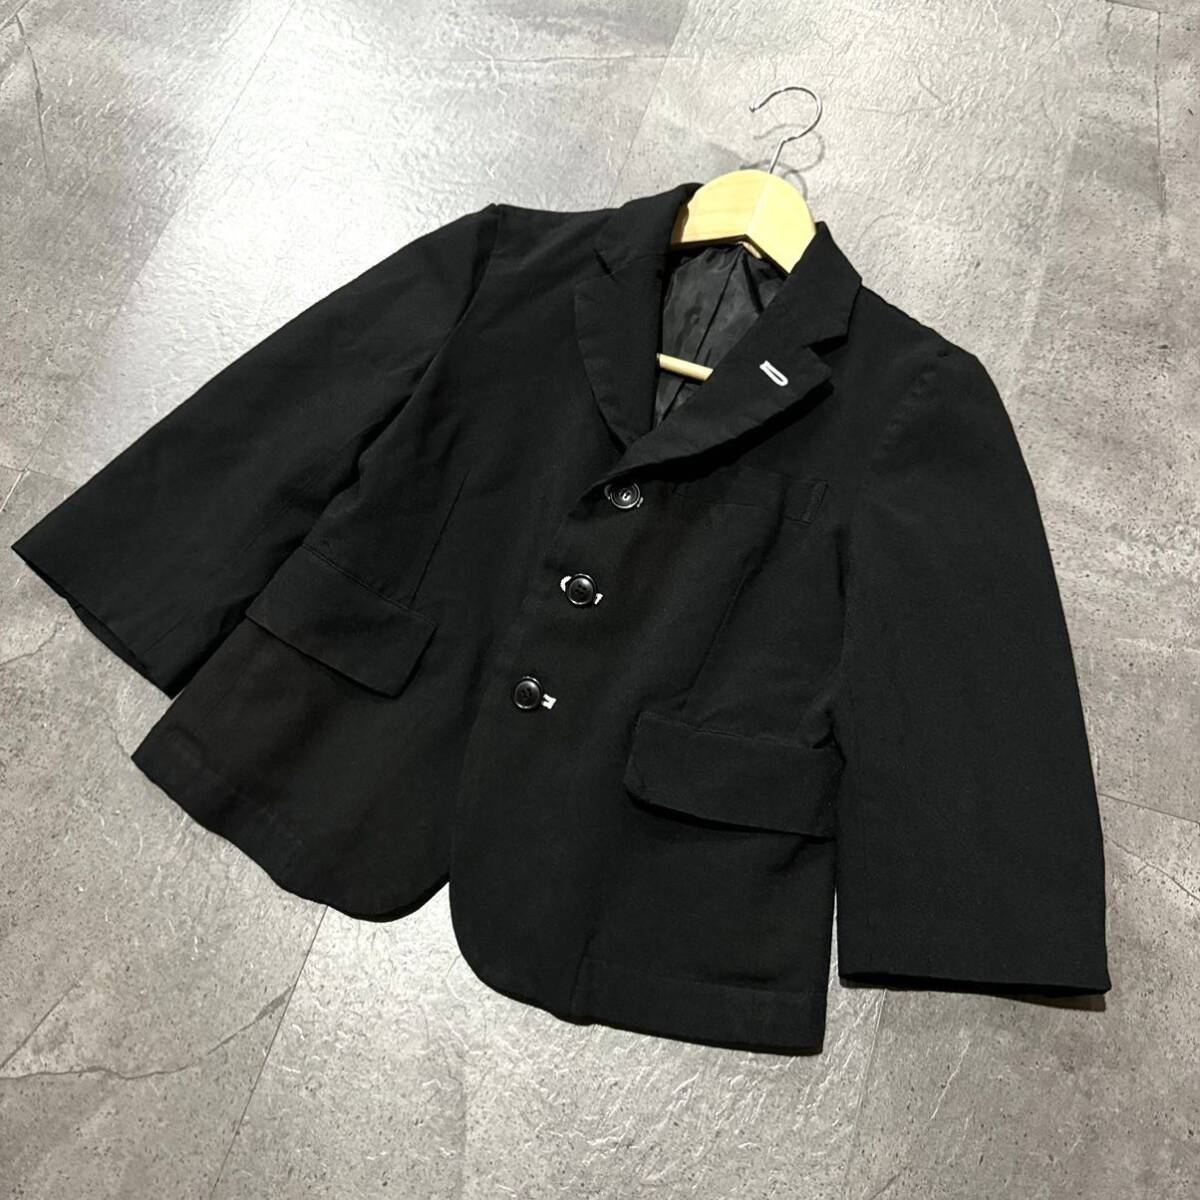 II ☆ 高級ラグジュアリー服 '日本製' COMME des GARCONS BLACK コムデギャルソン AD2014 ジャケット 羽織り size:XXS レディース アウターの画像1